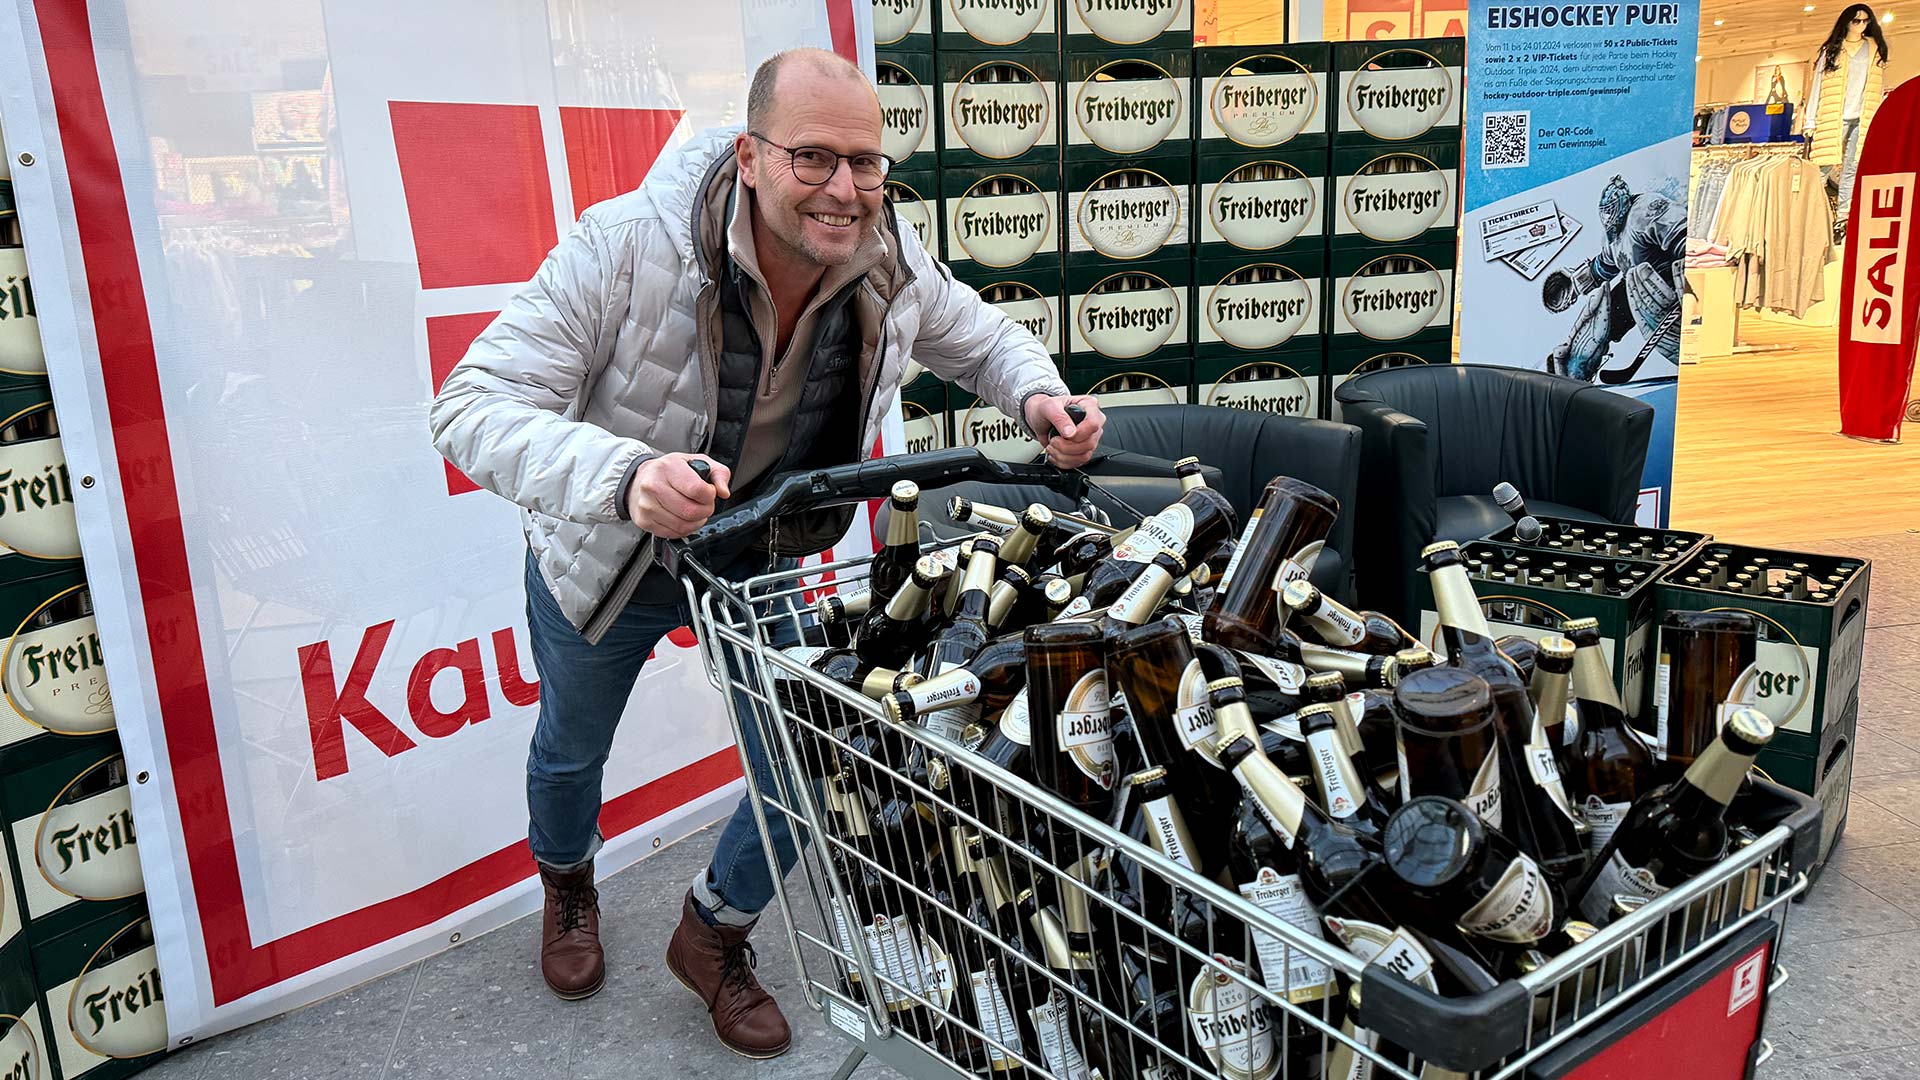 Frank Rehagel, Marketingleiter von Freiberger, posiert mit Freiberger-Flaschen